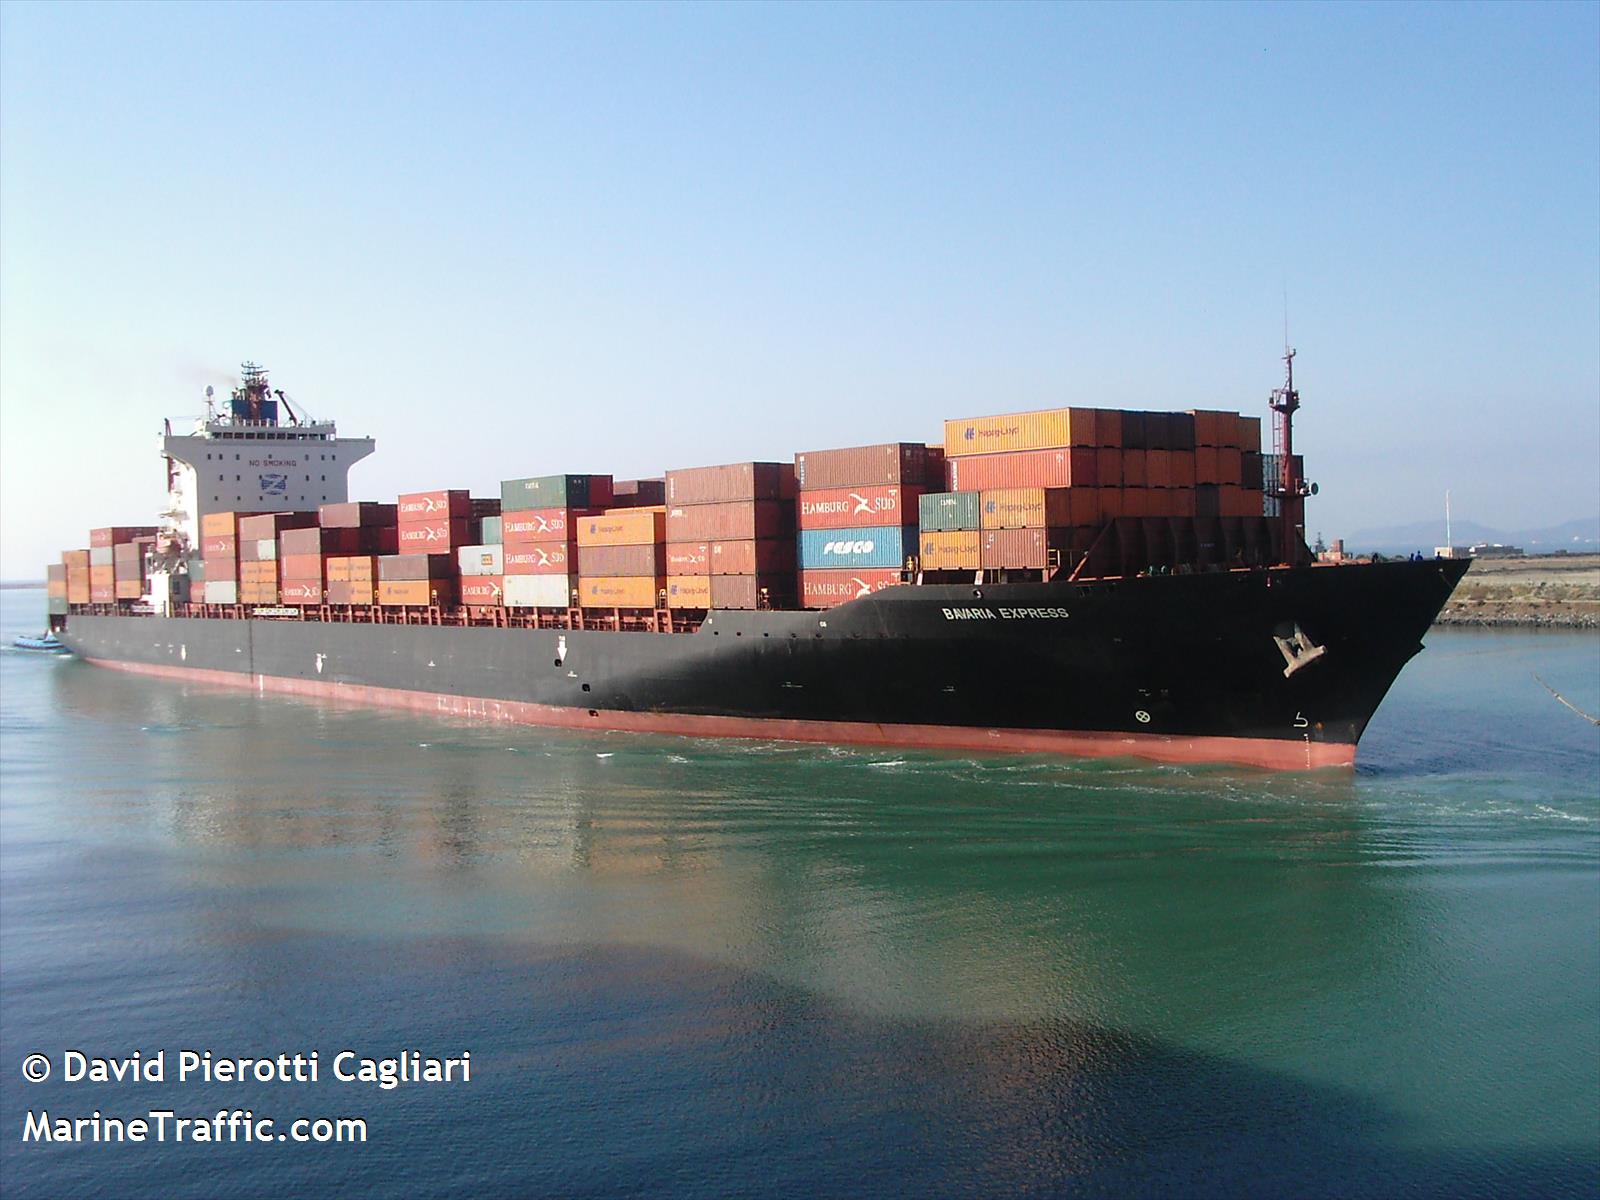 cma cgm algeciras (Container Ship) - IMO 9238753, MMSI 229235000, Call Sign 9HA5462 under the flag of Malta